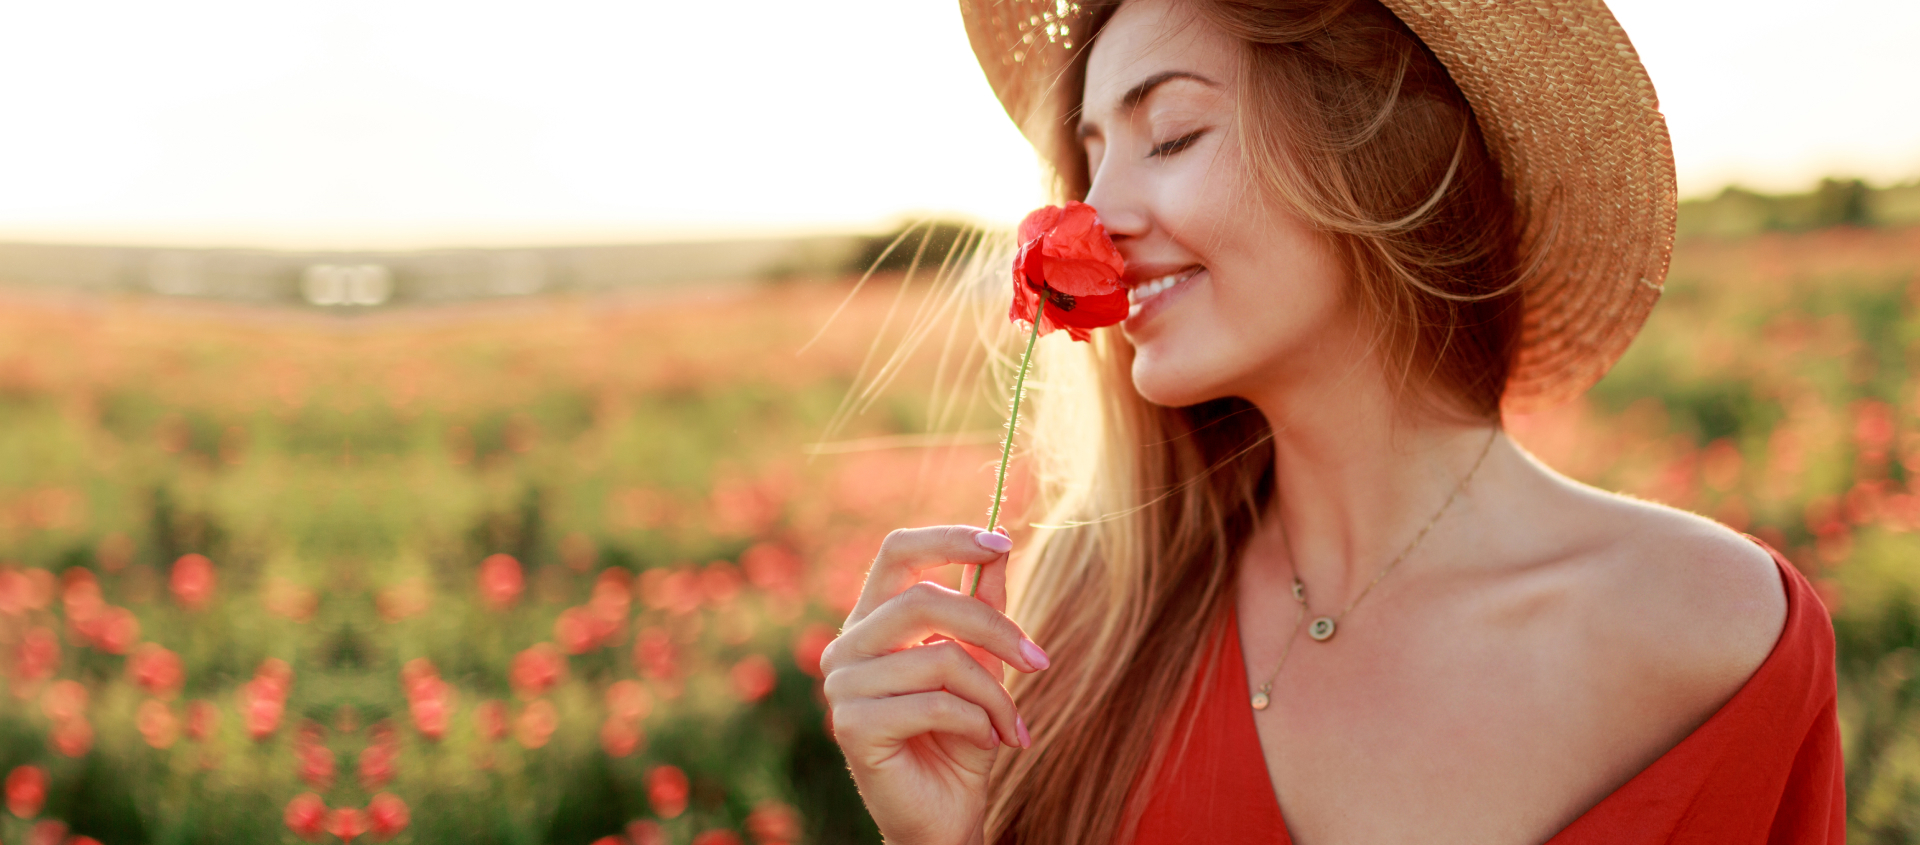 Foto ilustrativa de uma moça feliz cheirando uma flor no campo